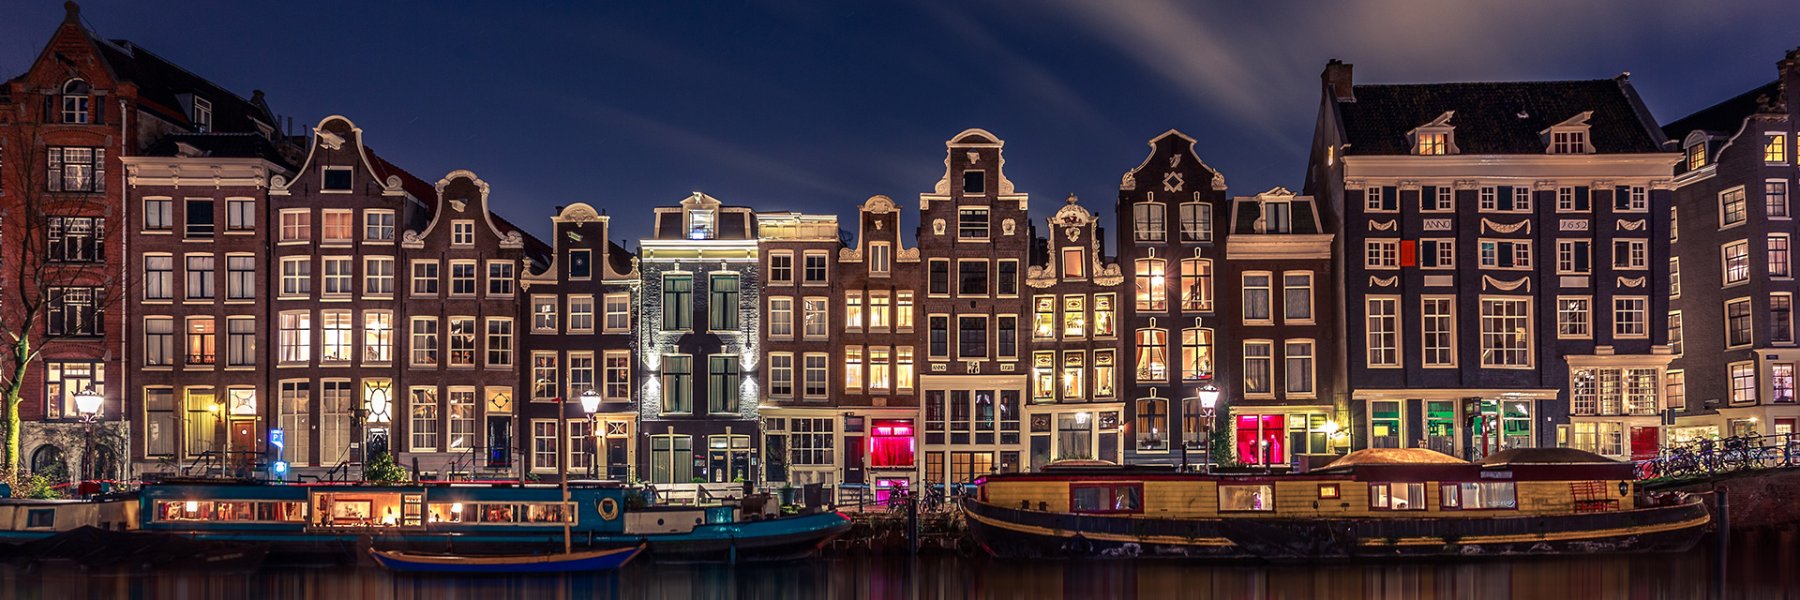 Dein Luxus-Ferienhaus in Holland